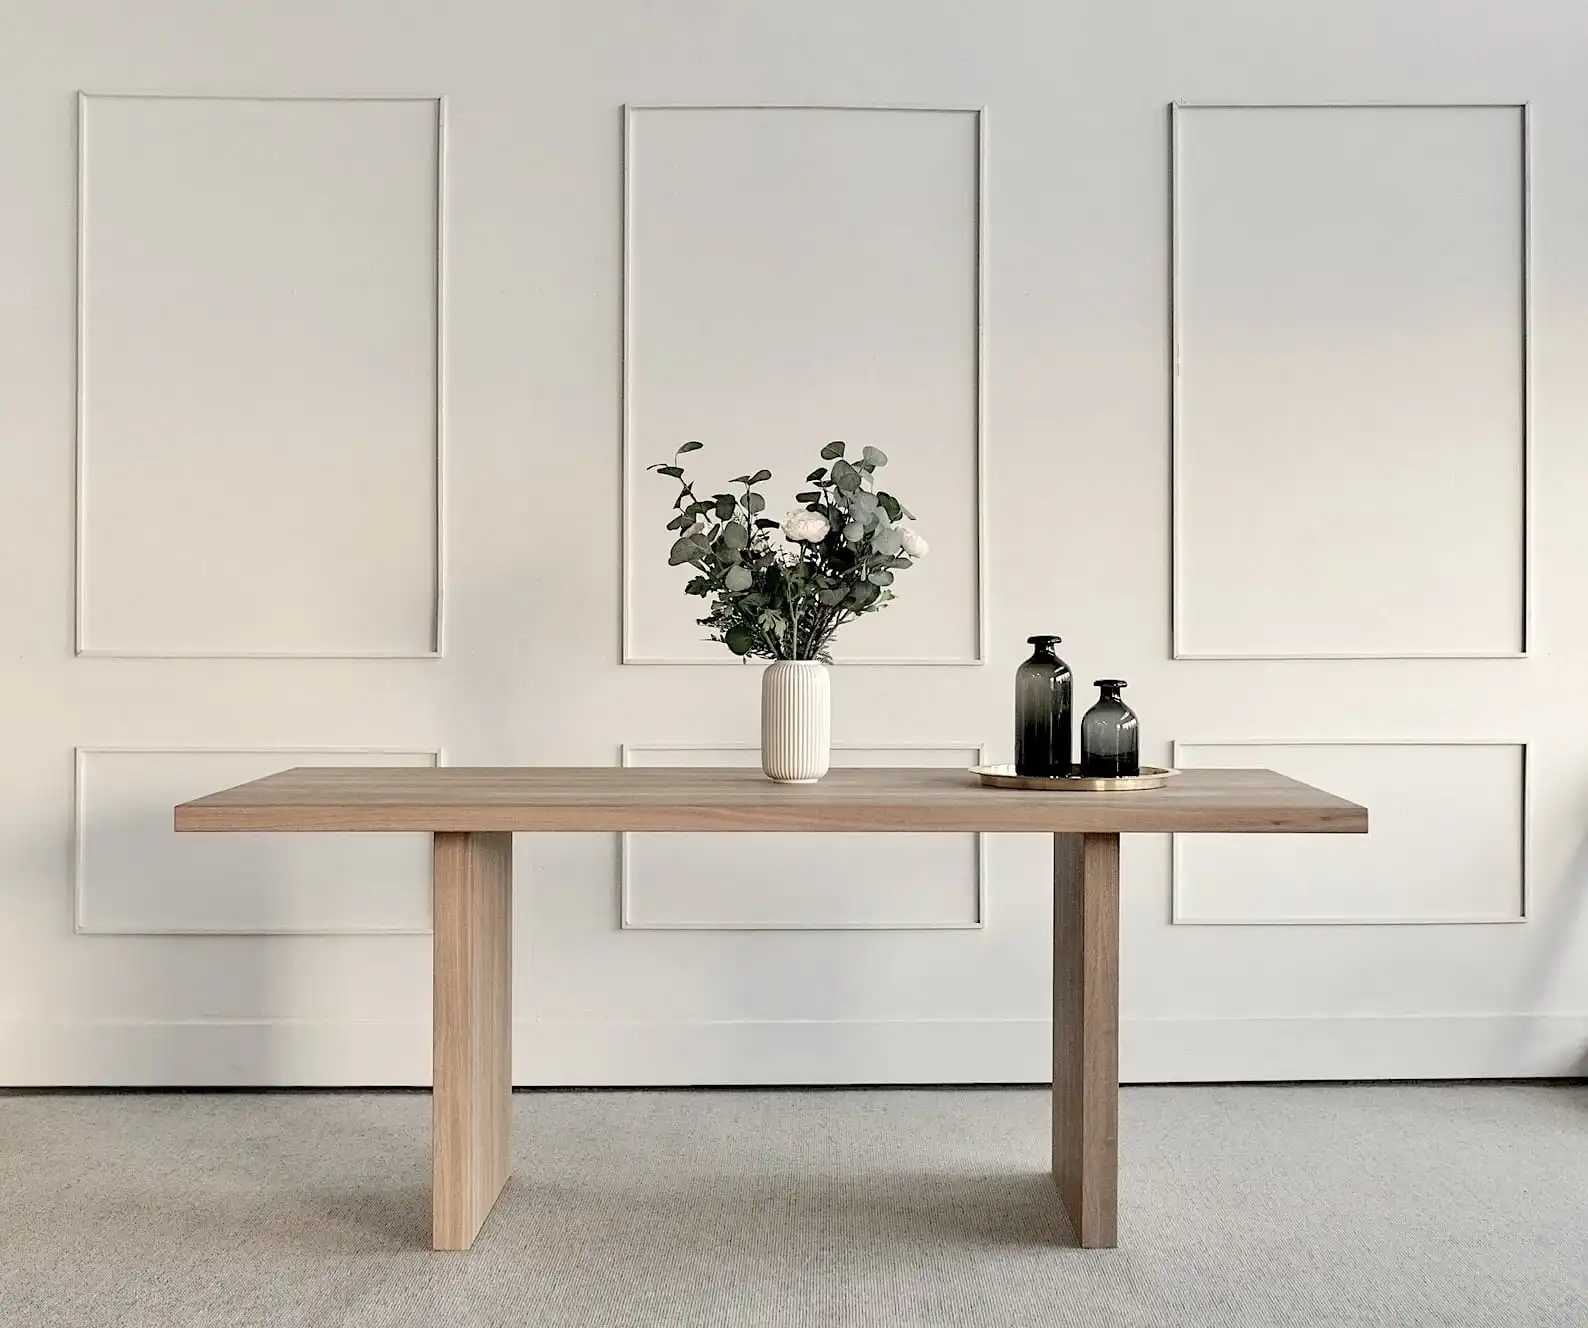  Console minimaliste en bois clair avec décoration épurée, vase blanc avec eucalyptus et bouteilles noires, sur fond de mur blanc avec cadres décoratifs. 